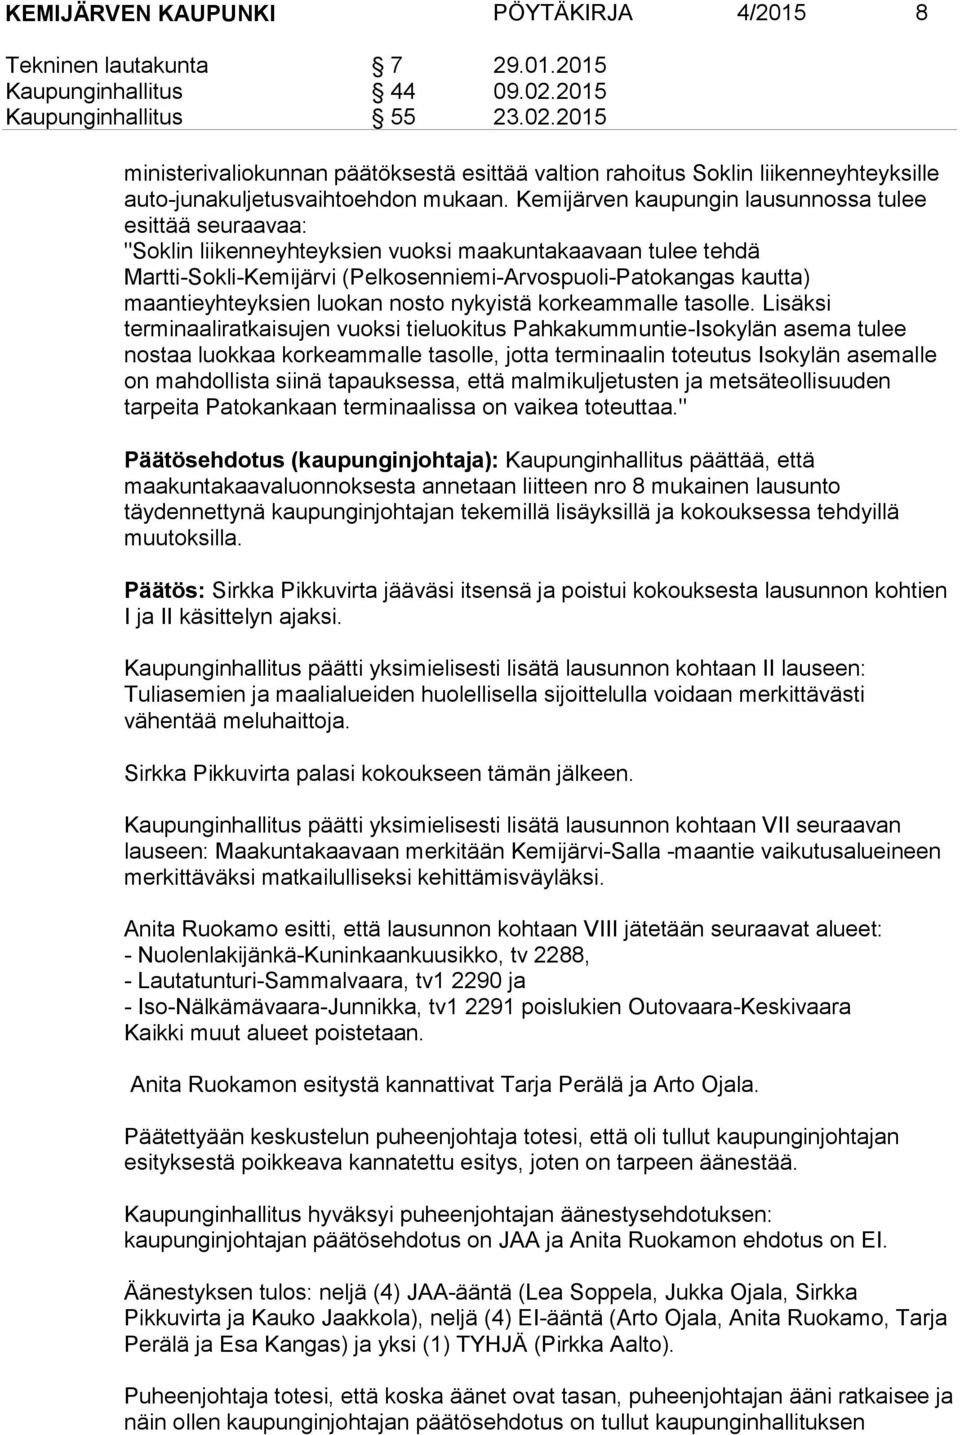 Kemijärven kaupungin lausunnossa tulee esittää seuraavaa: "Soklin liikenneyhteyksien vuoksi maakuntakaavaan tulee tehdä Martti-Sokli-Kemijärvi (Pelkosenniemi-Arvospuoli-Patokangas kautta)